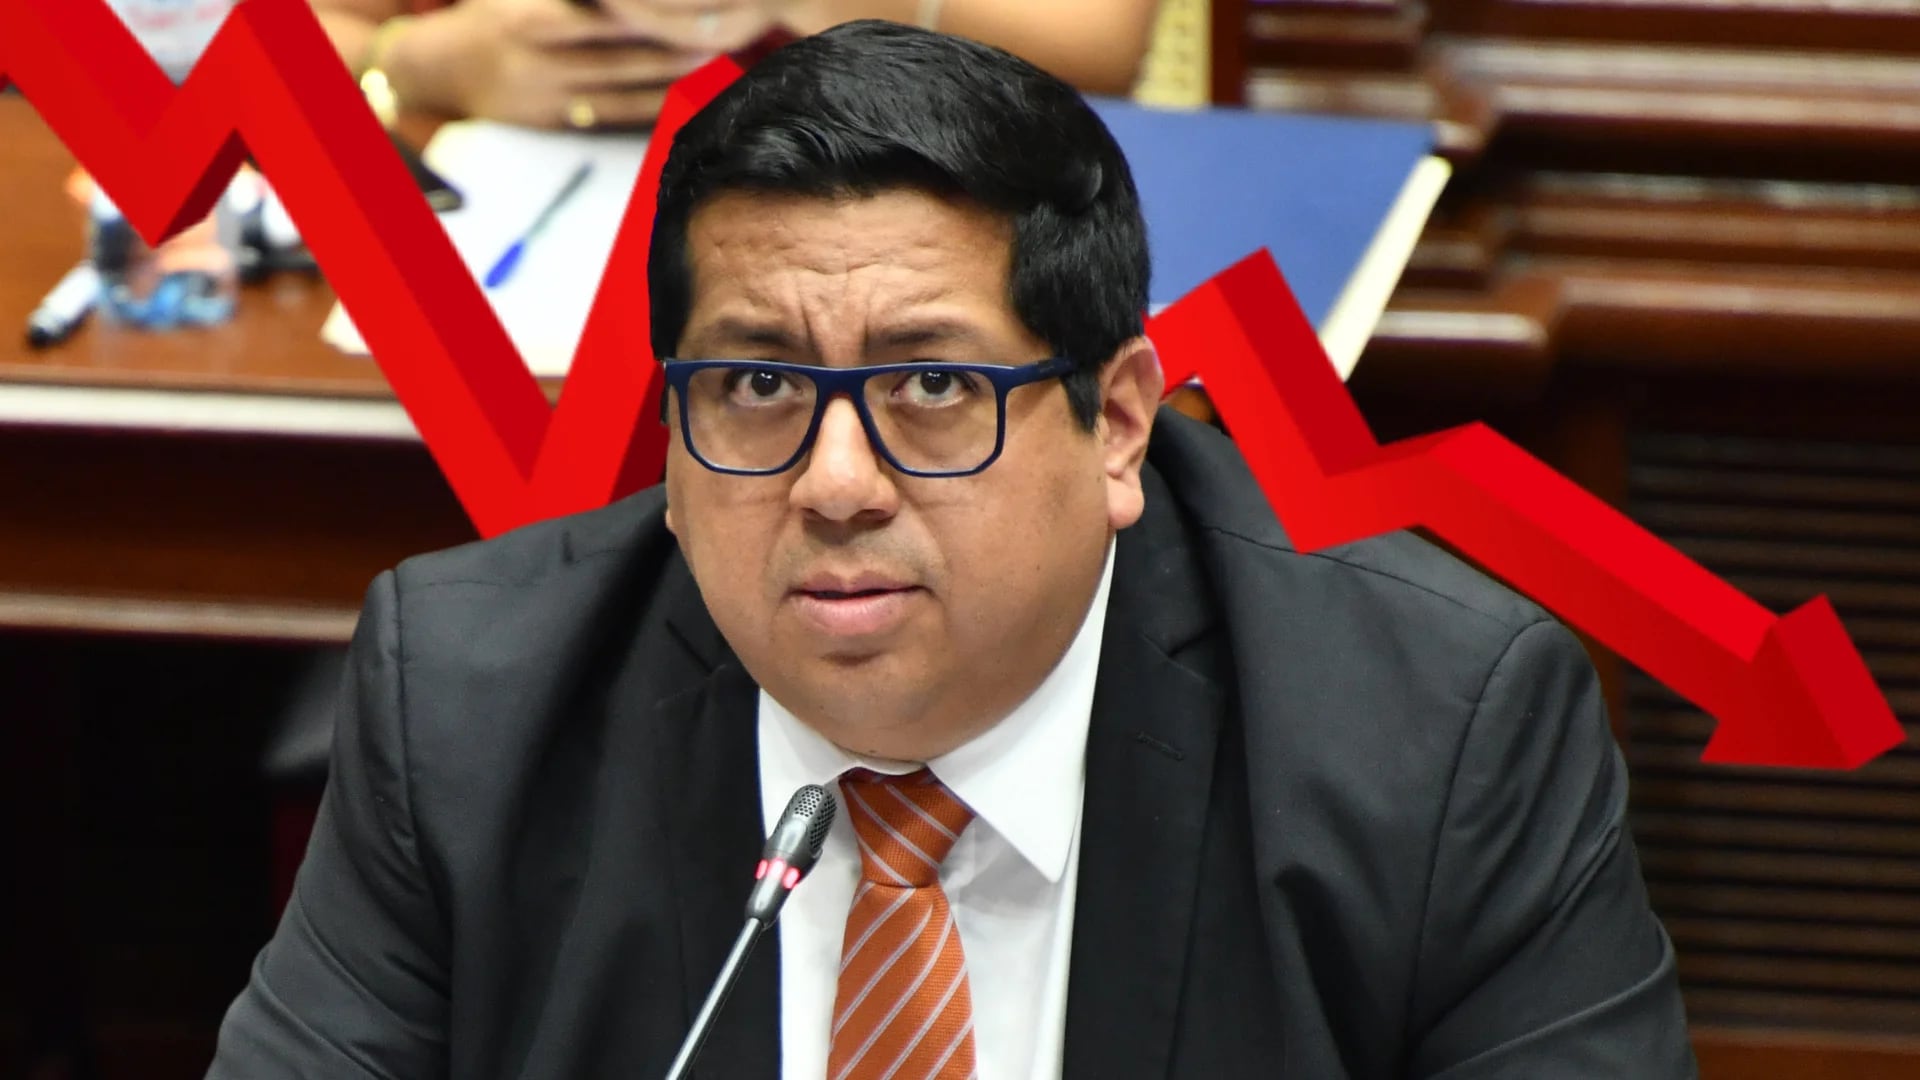 Un 64% de peruanos desaprueba la gestión de Alex Contreras en el MEF, según Datum